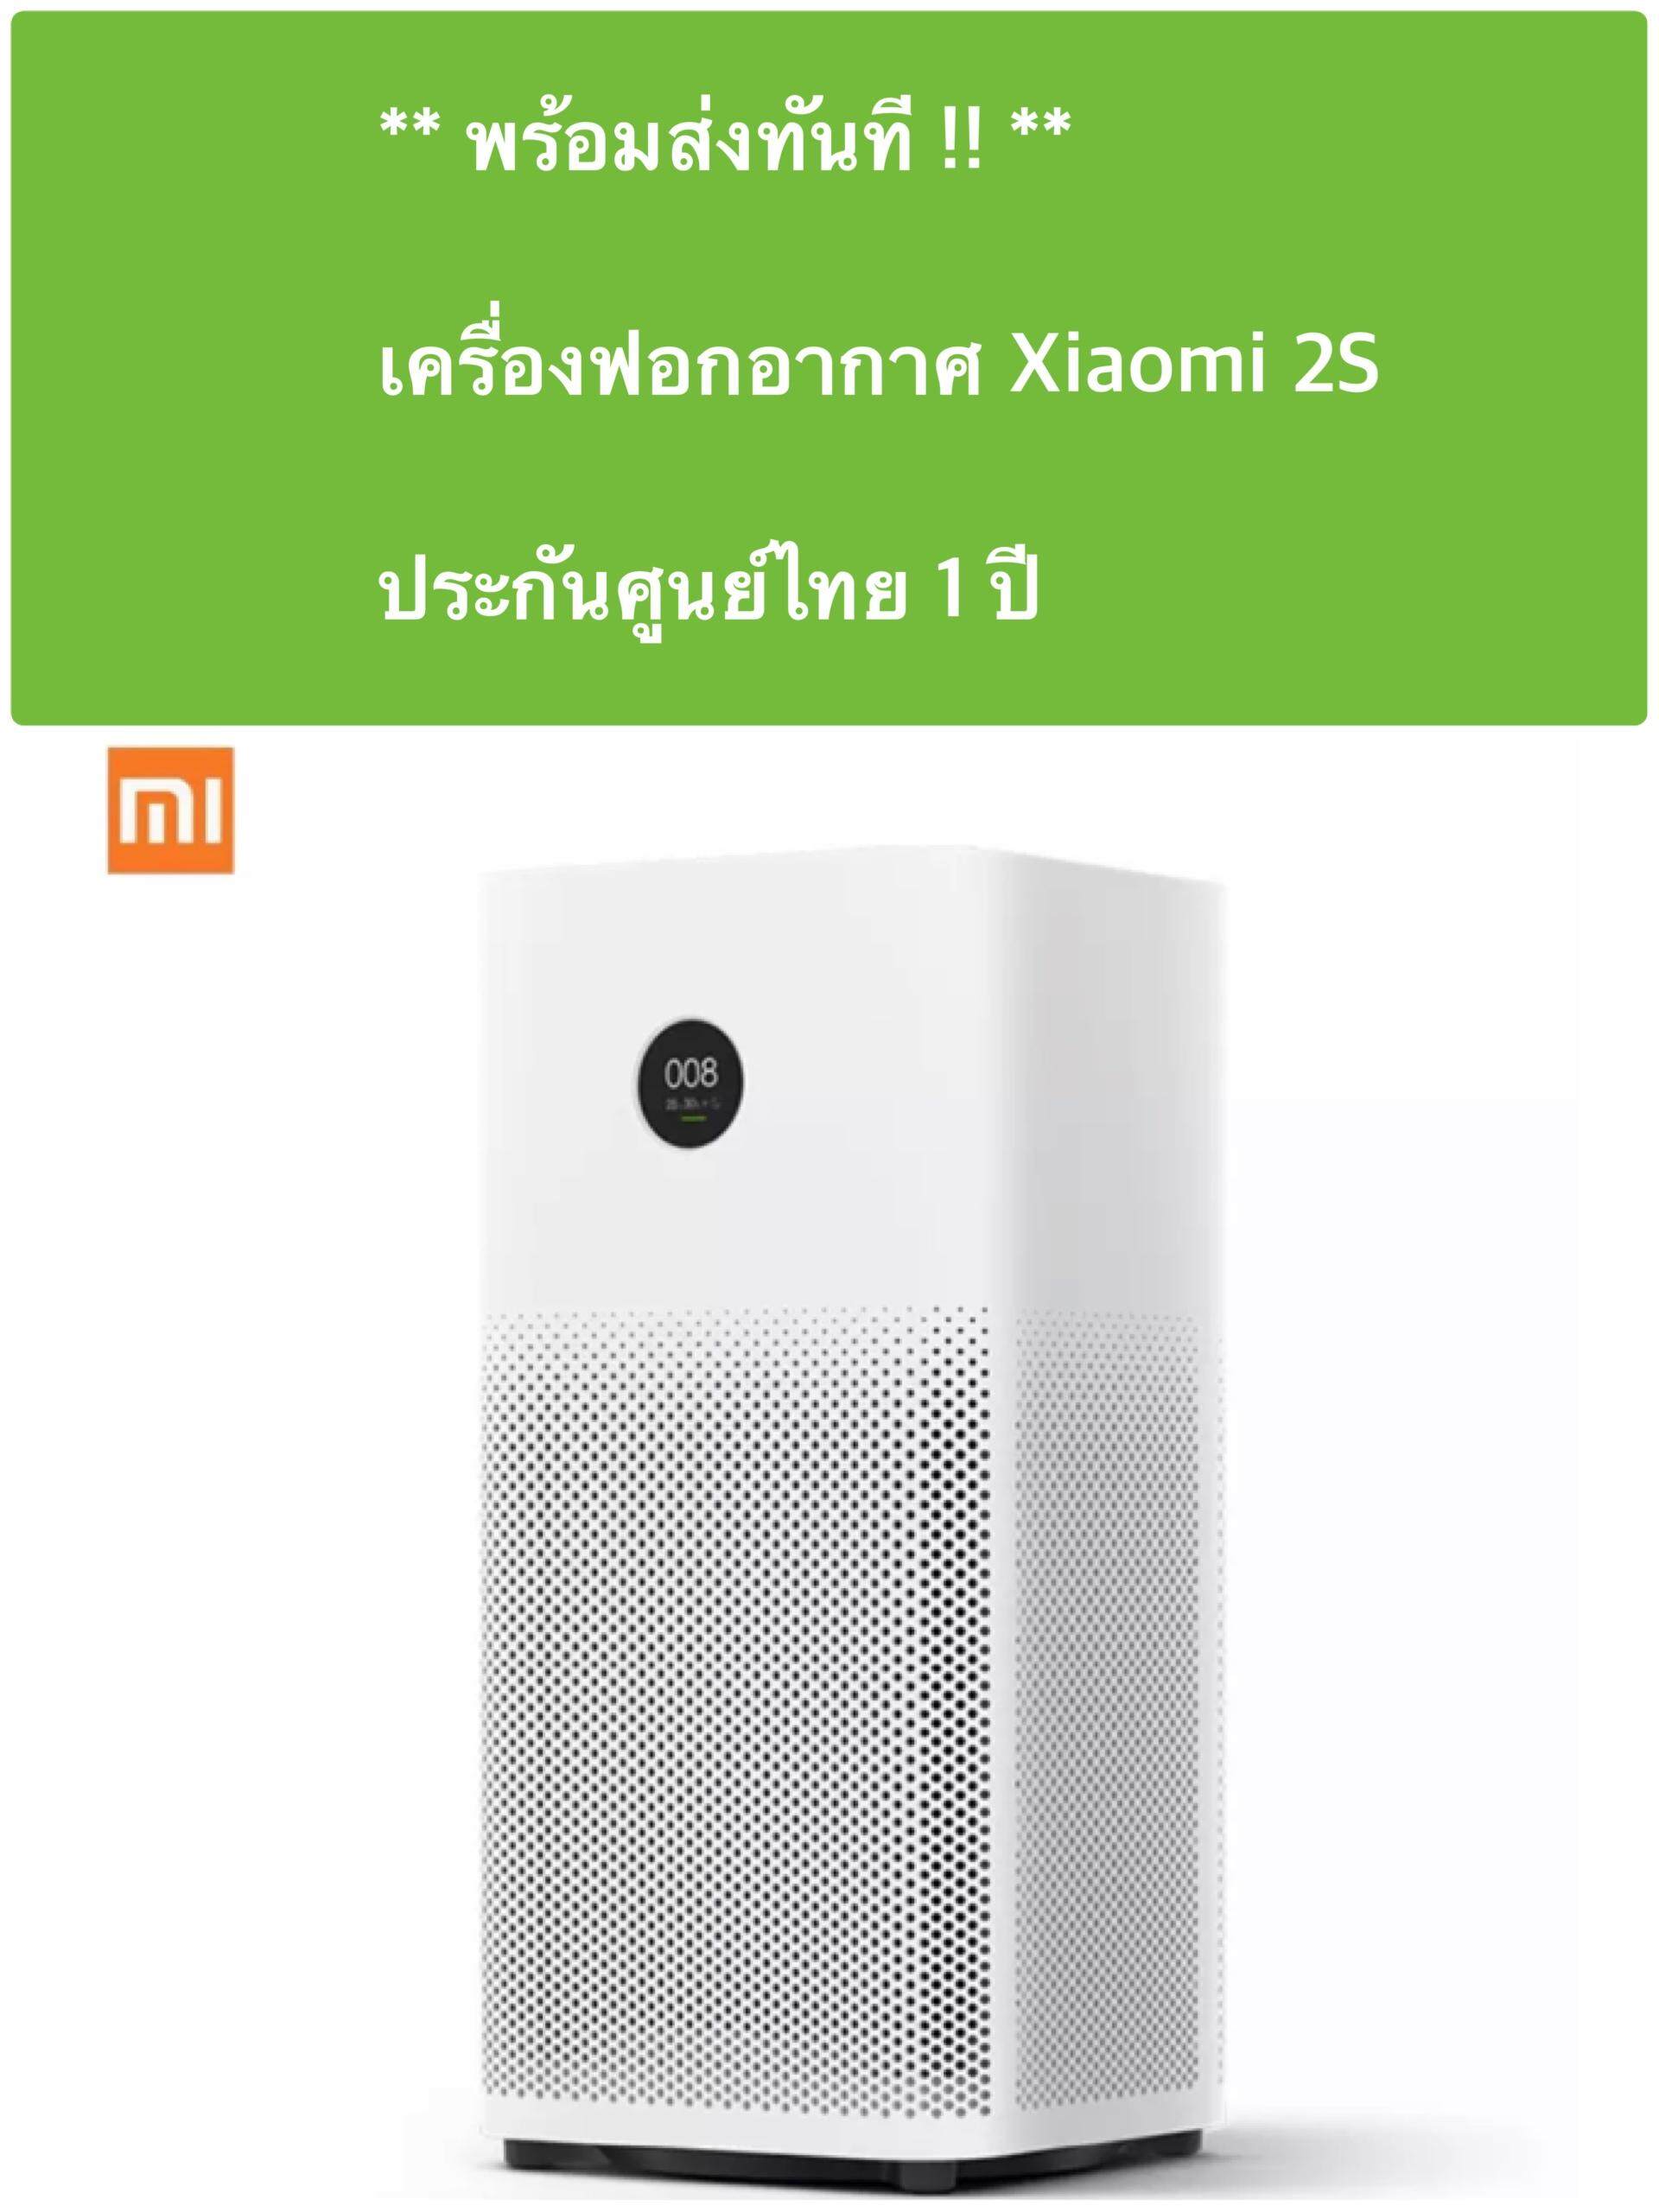 การใช้งาน  แพร่  พร้อมส่งทันที  เครื่องฟอกอากาศ Xiaomi air purifier 2S ประกันศูนย์ไทย 1 ปี